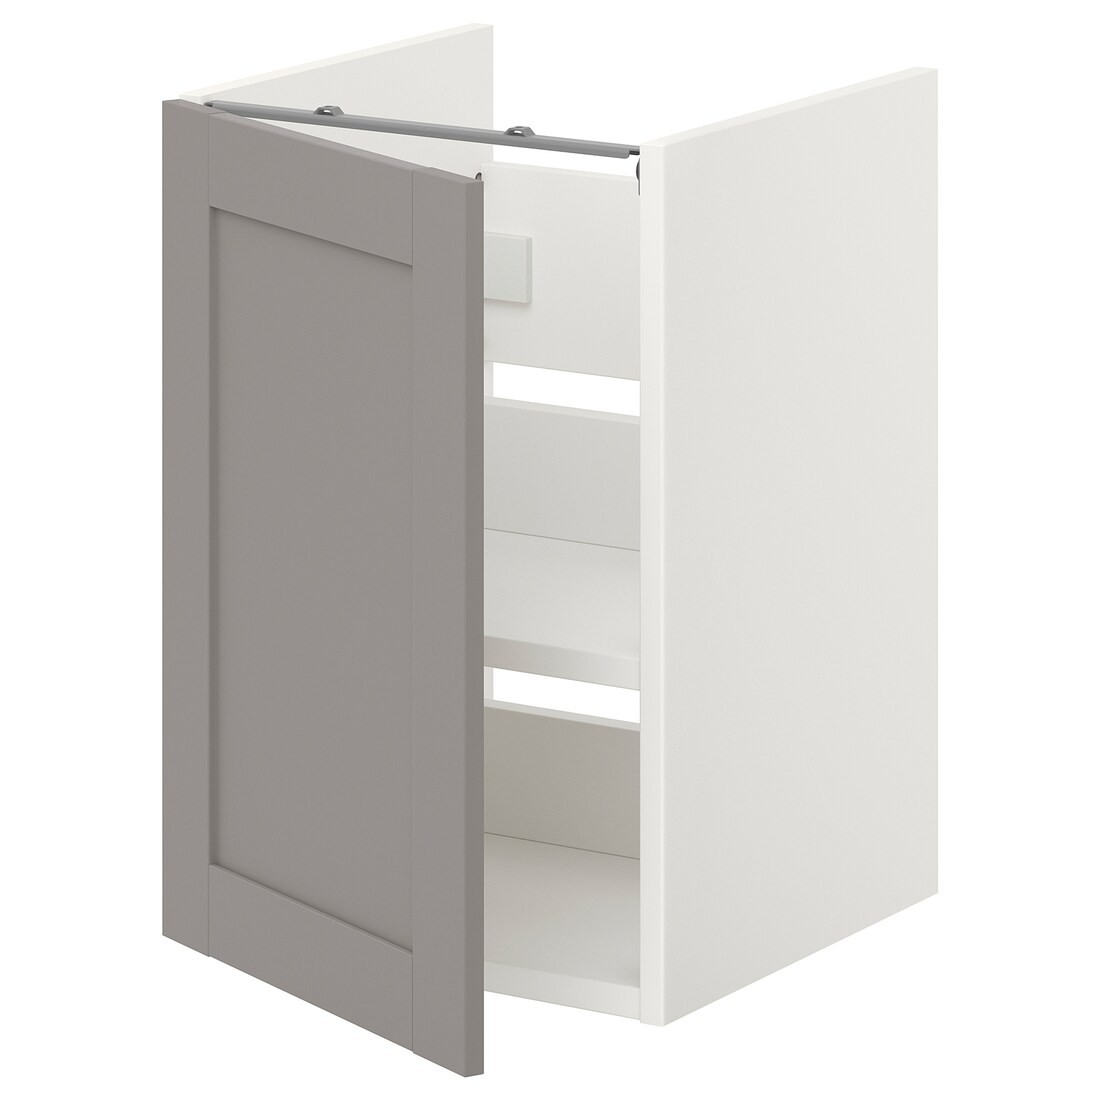 IKEA ENHET ЭНХЕТ Шкаф под умывальник с полкой и дверью, белый / серая рамка, 40x42x60 см 99321120 993.211.20